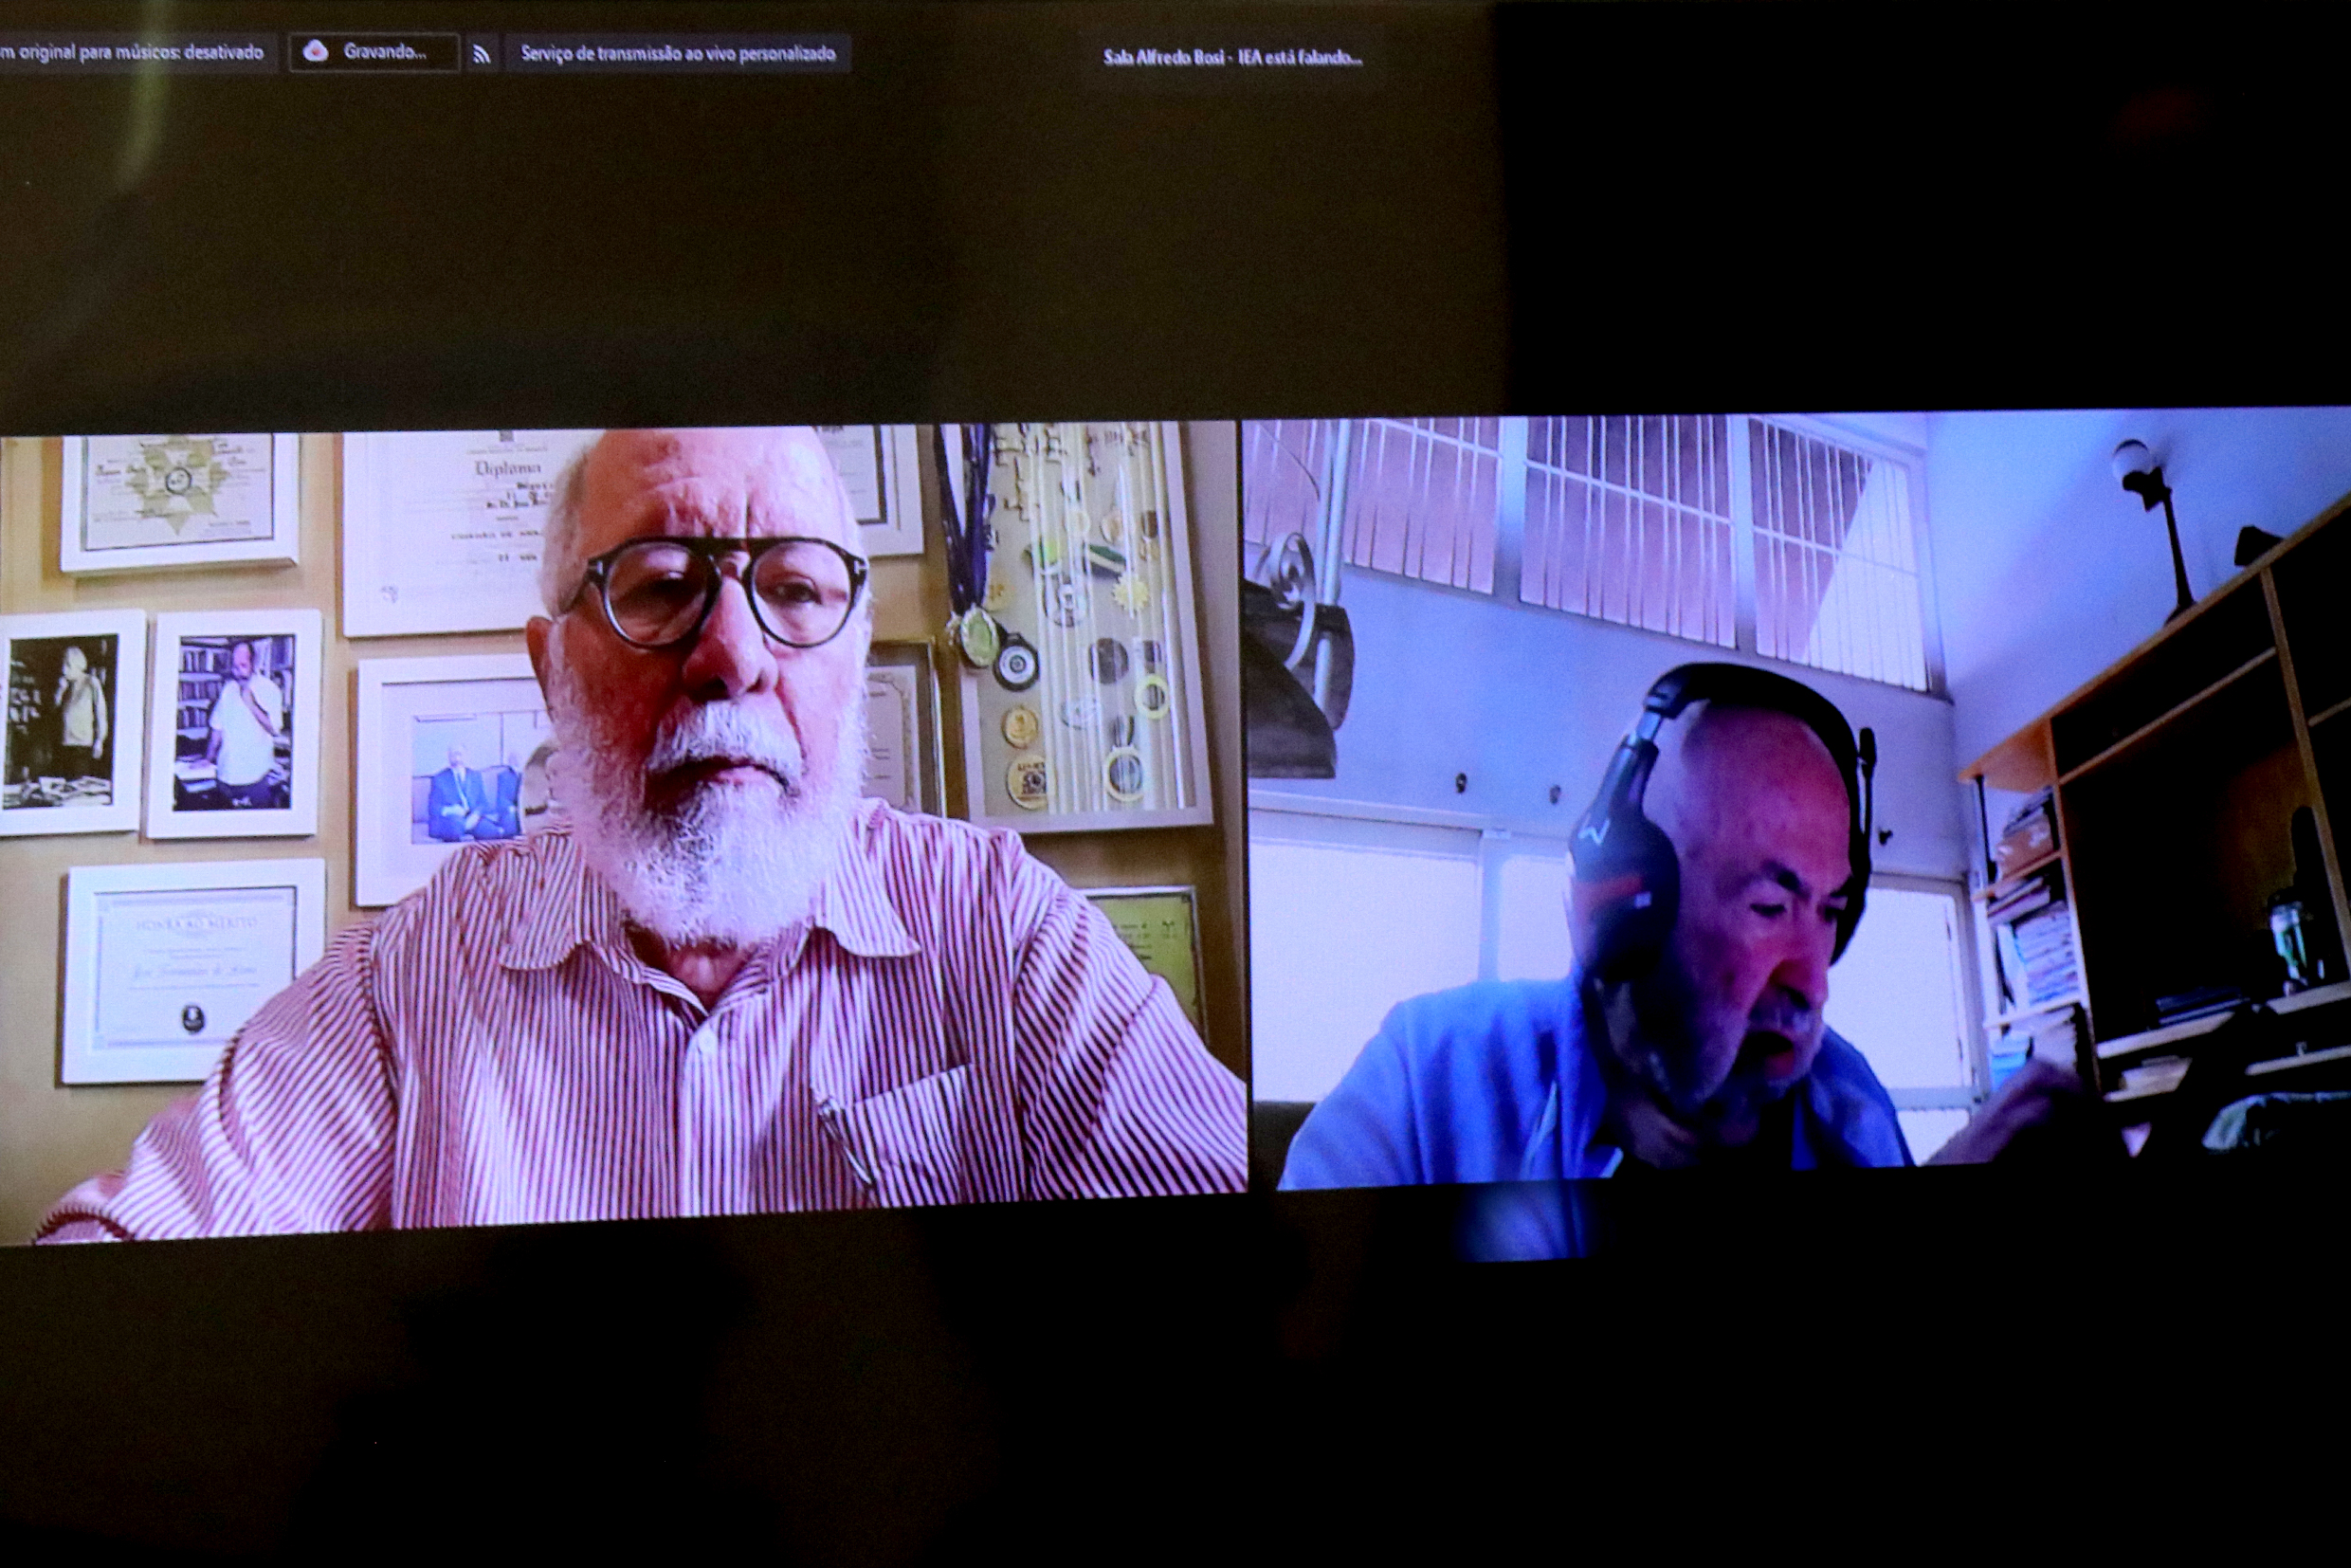 José Fernandes Lima e Francisco Cordão, via vídeo-conferência